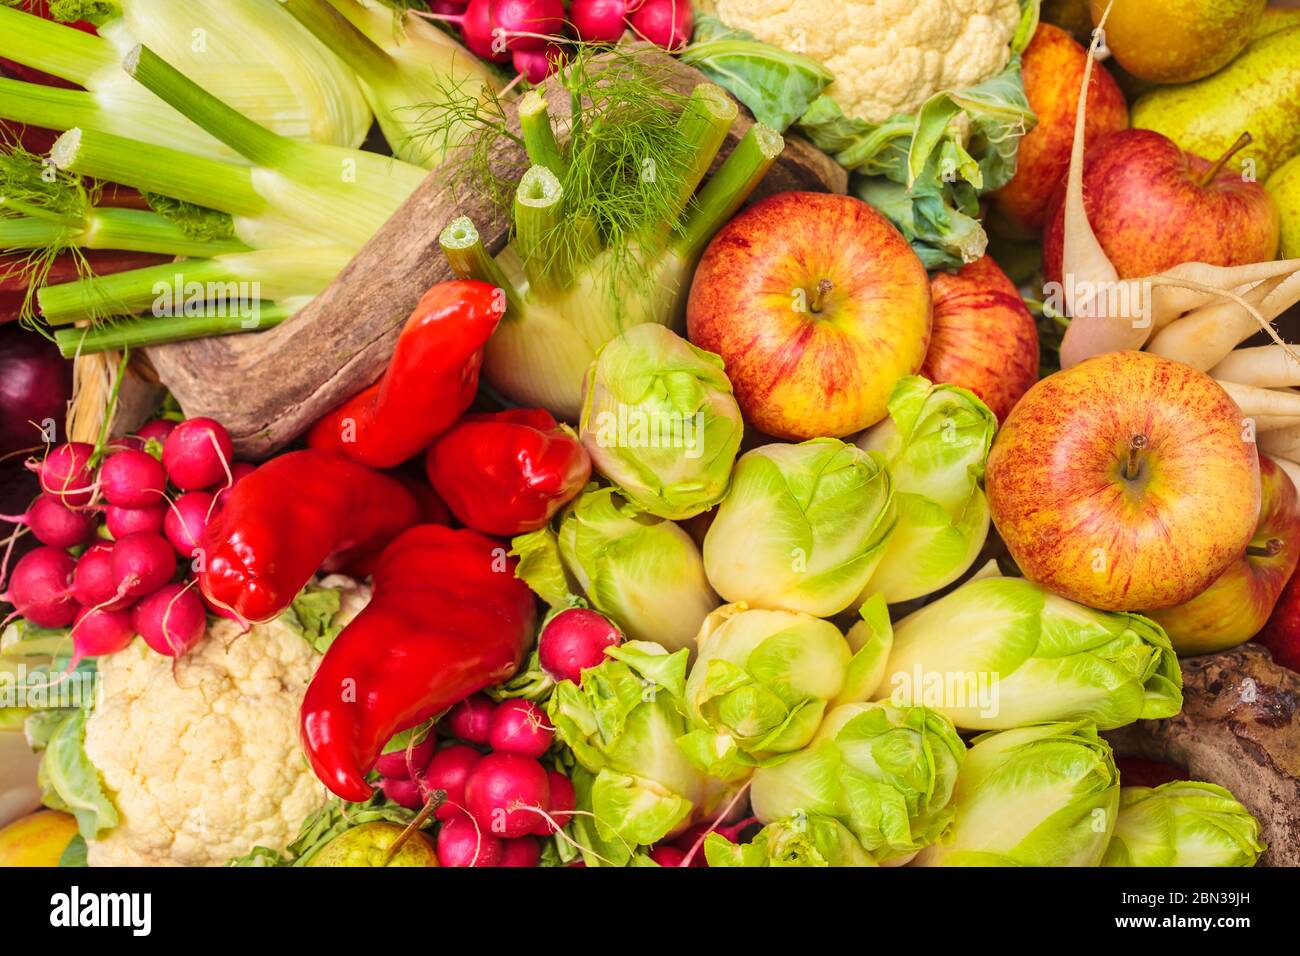 Sammlung von frischen Bio-Lebensmitteln mit Äpfeln, Paprika und anderem Gemüse Stockfoto